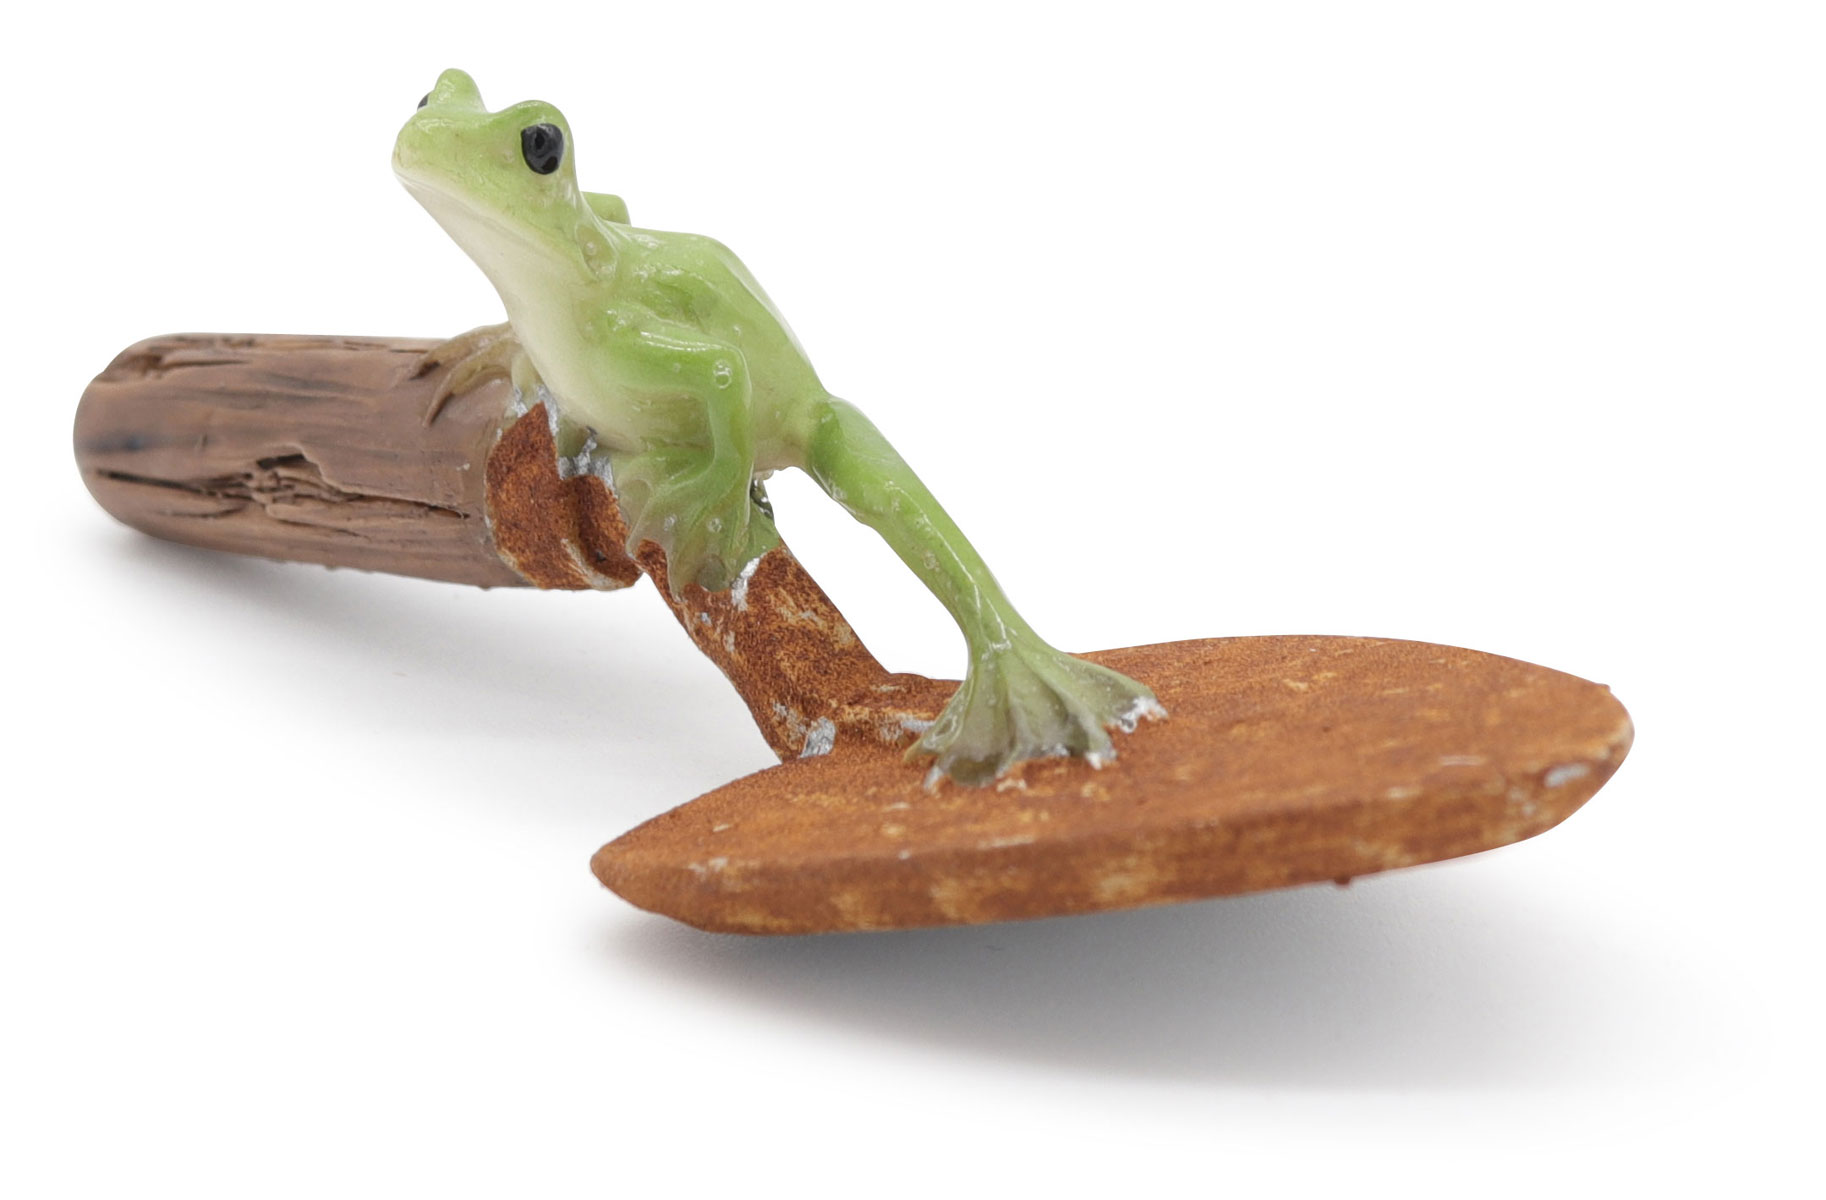 Frog Erwin on trowel, 